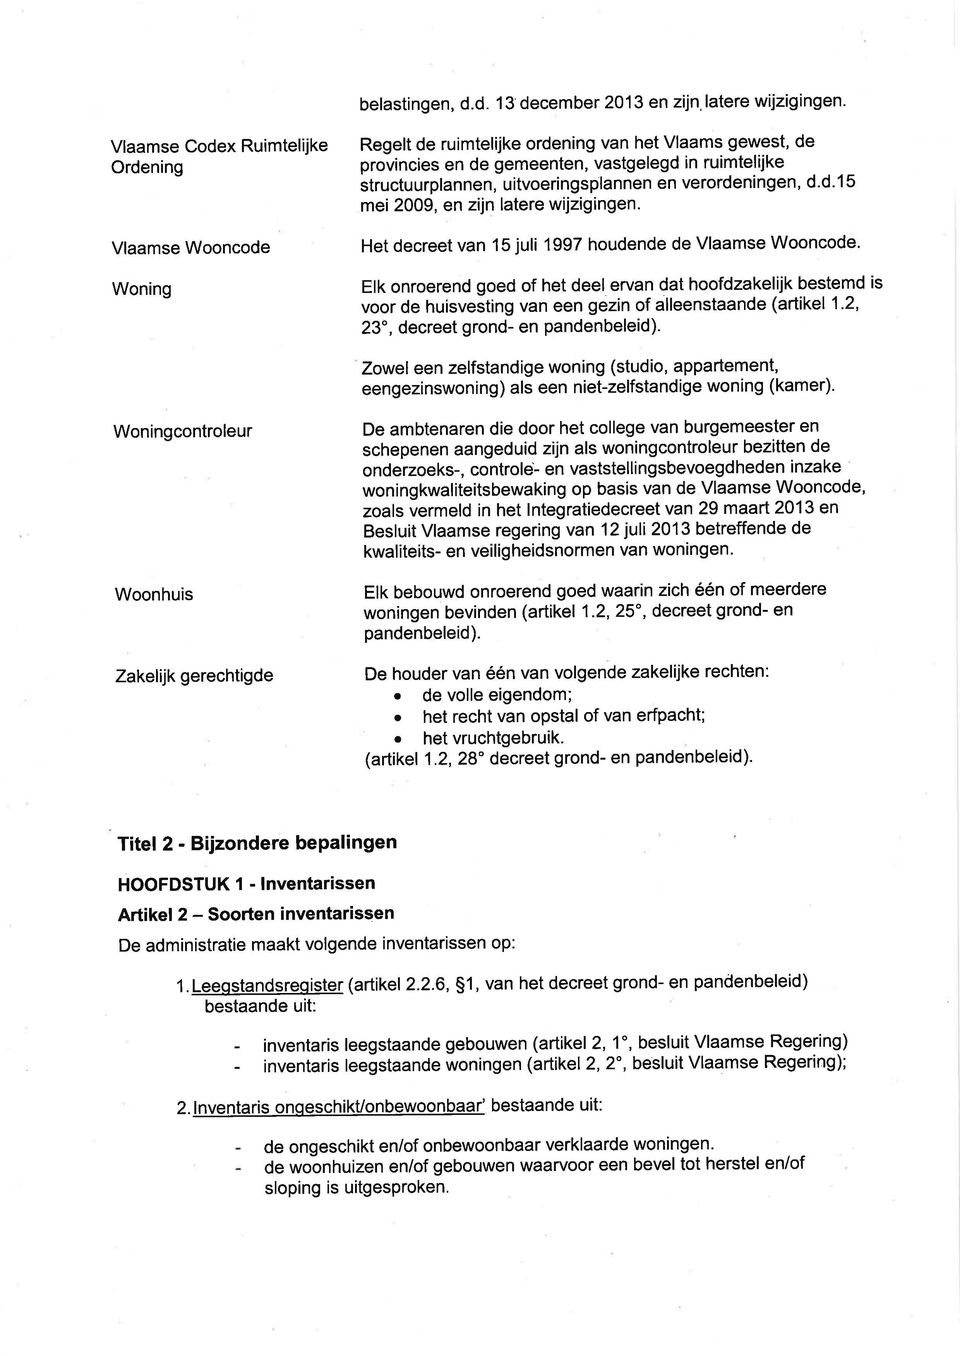 uitvoeringsplannen en verordeningen, d.d.1 5 mei 2009, en zijn latere wijzigingen. Het decreet van 15 juli 1997 houdende de Vlaamse Wooncode.